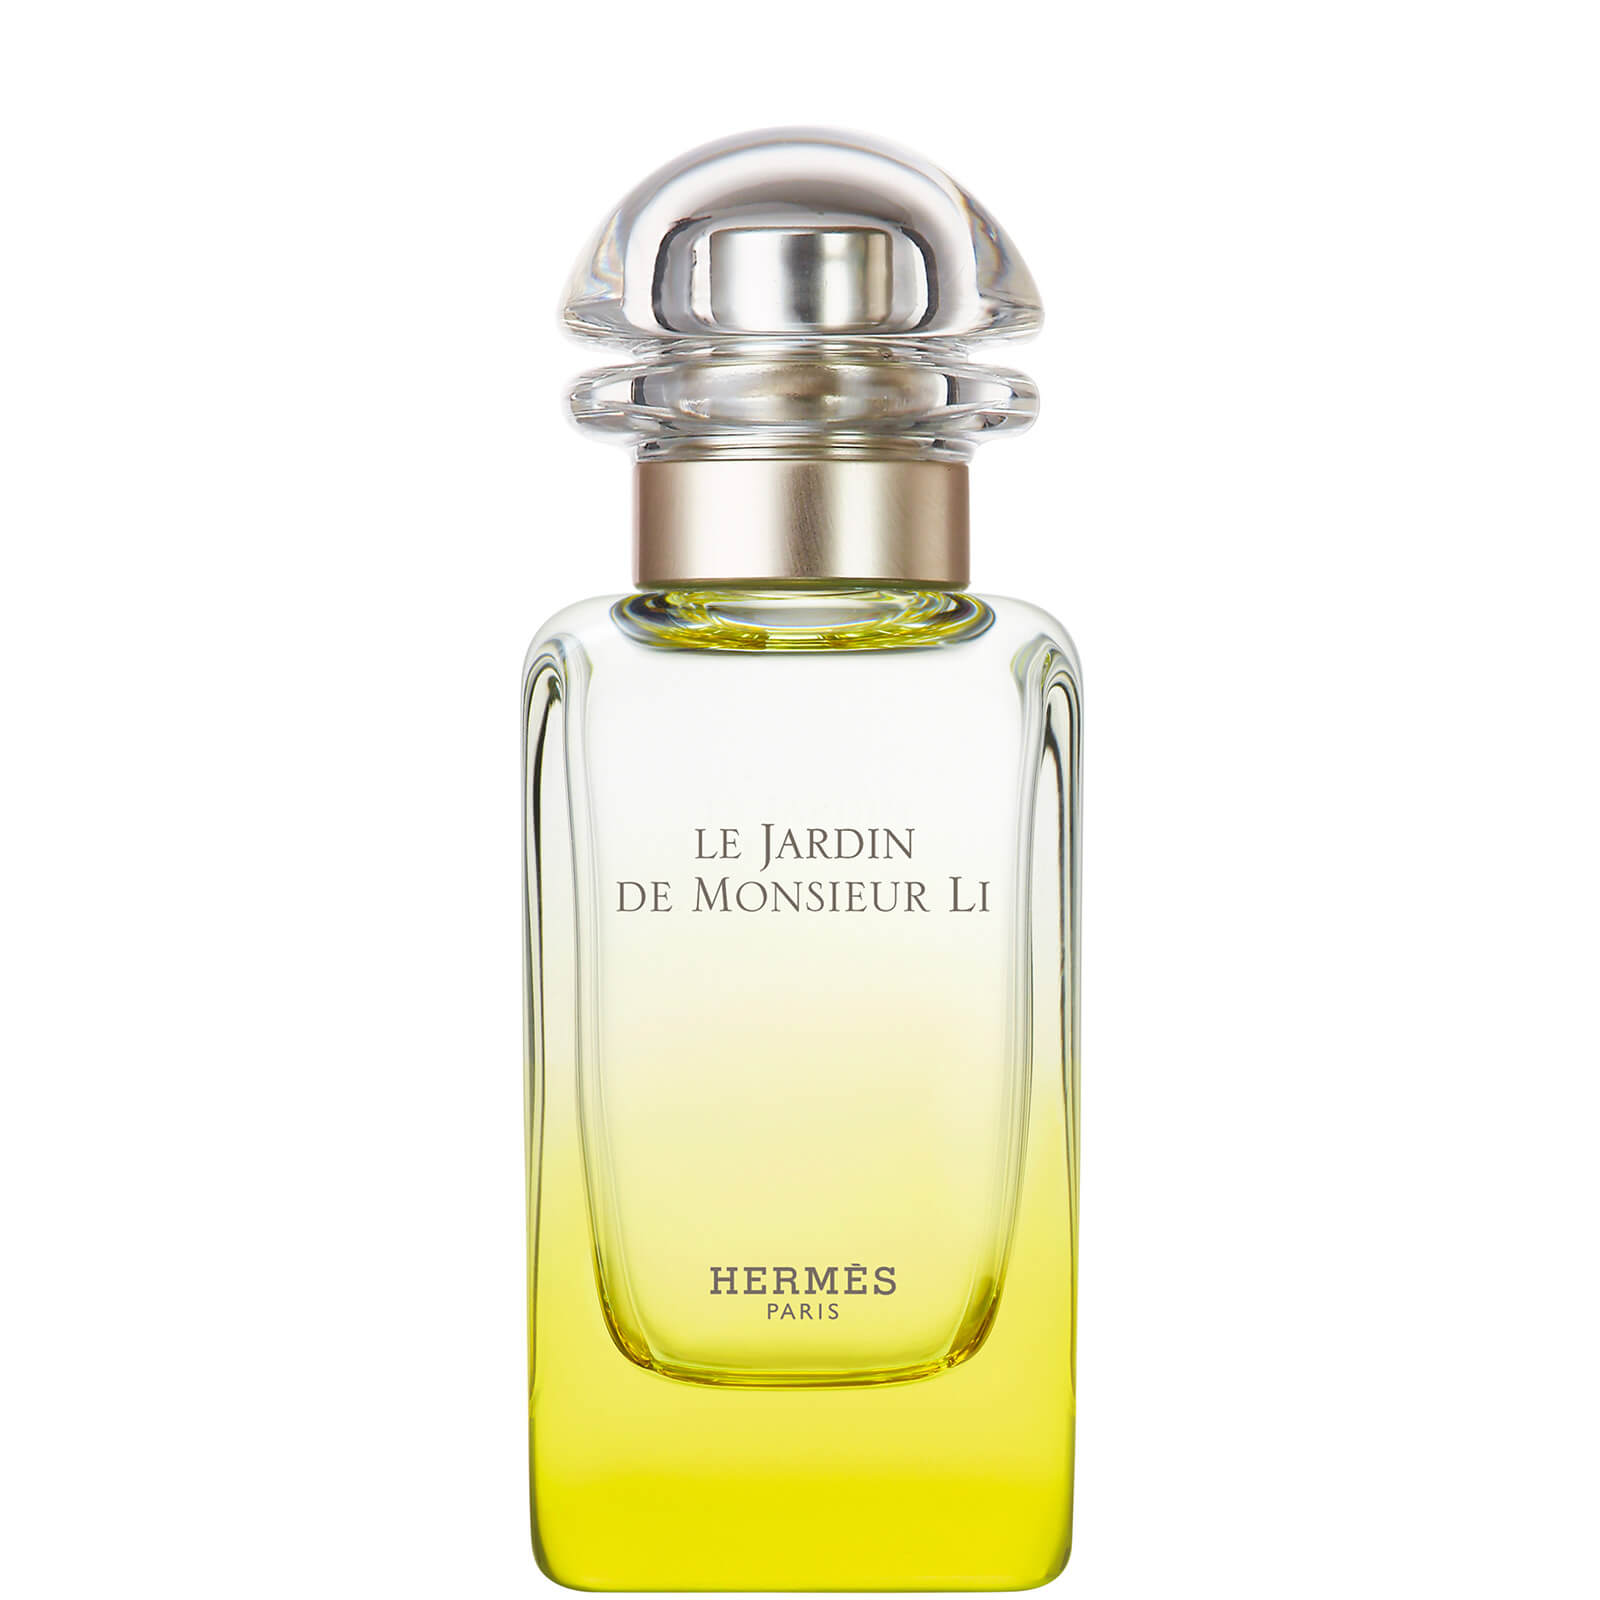 Photos - Women's Fragrance Hermes Hermès Le Jardin de Monsieur Li Eau de Toilette 50ml 32121 